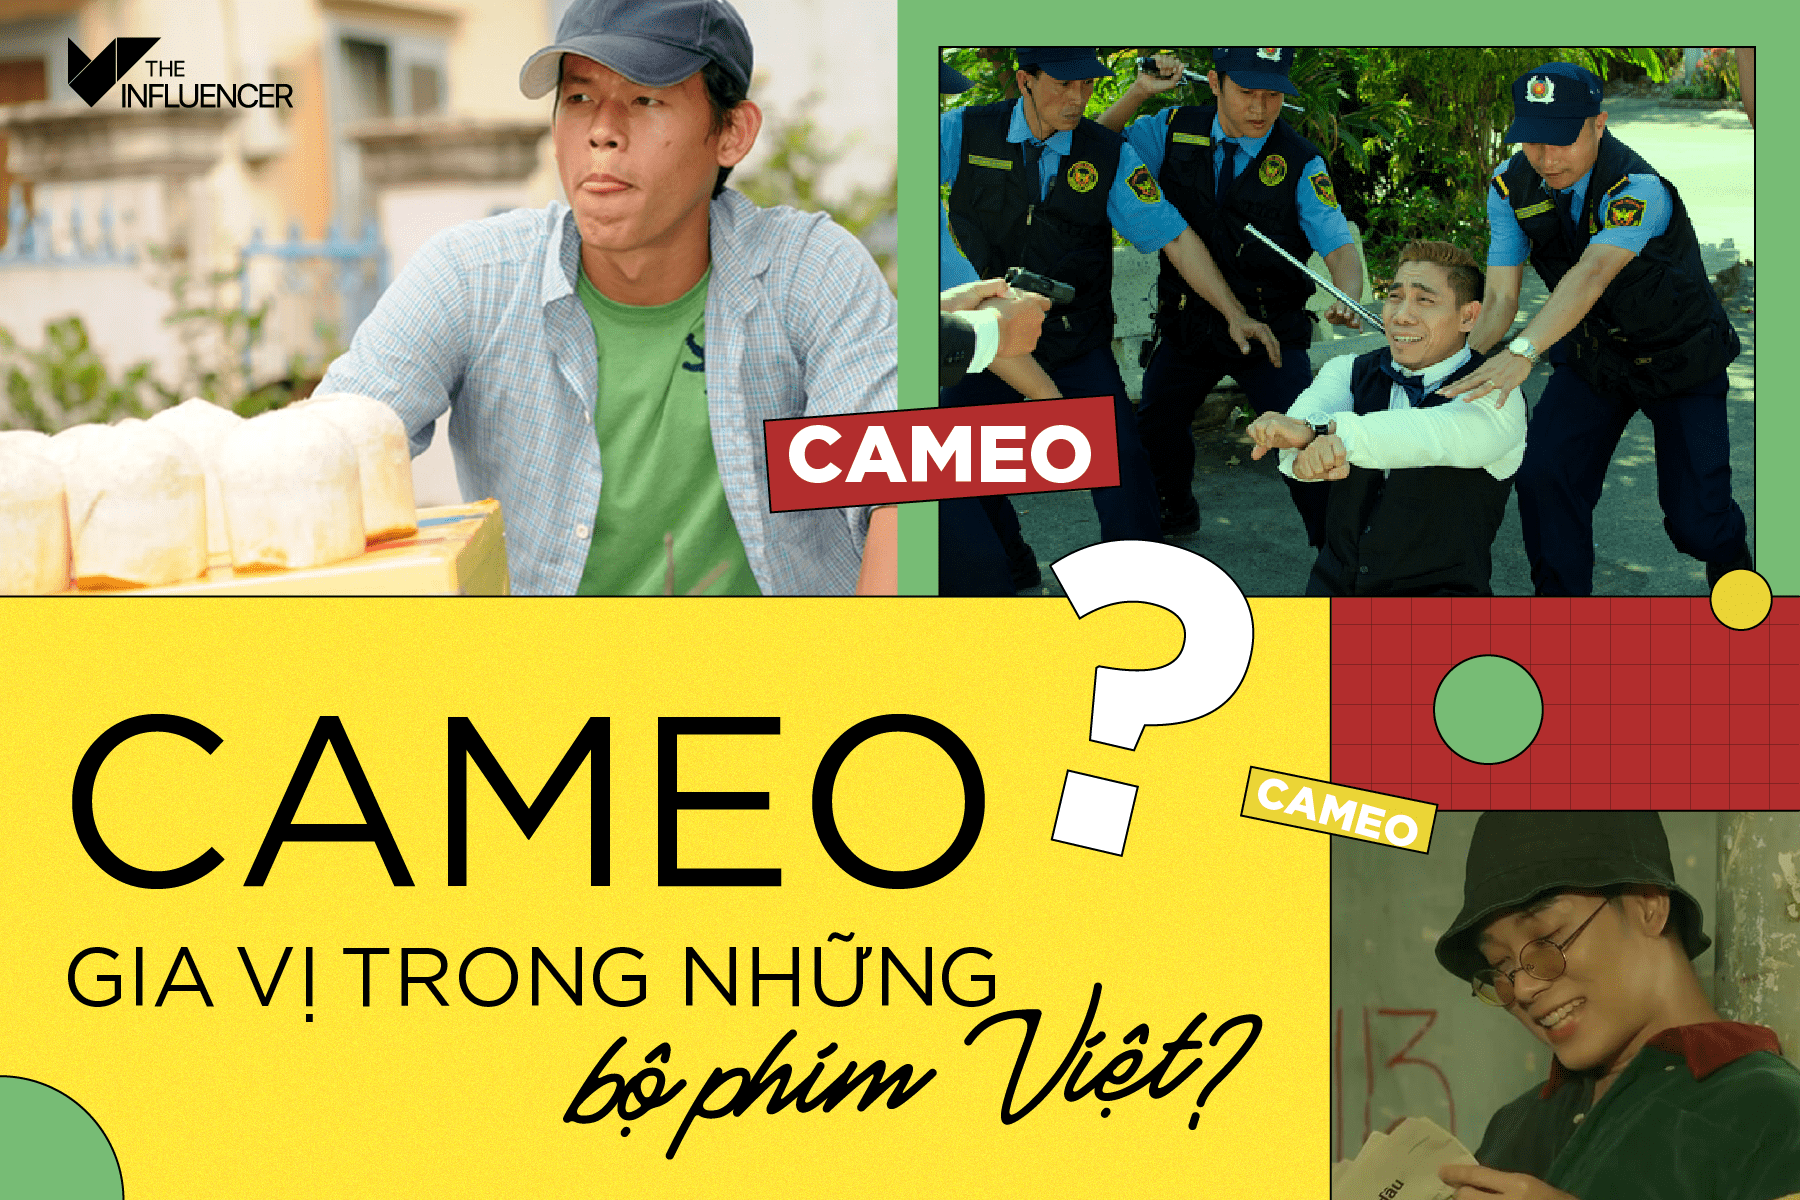 Cameo: Gia vị trong những bộ phim Việt?